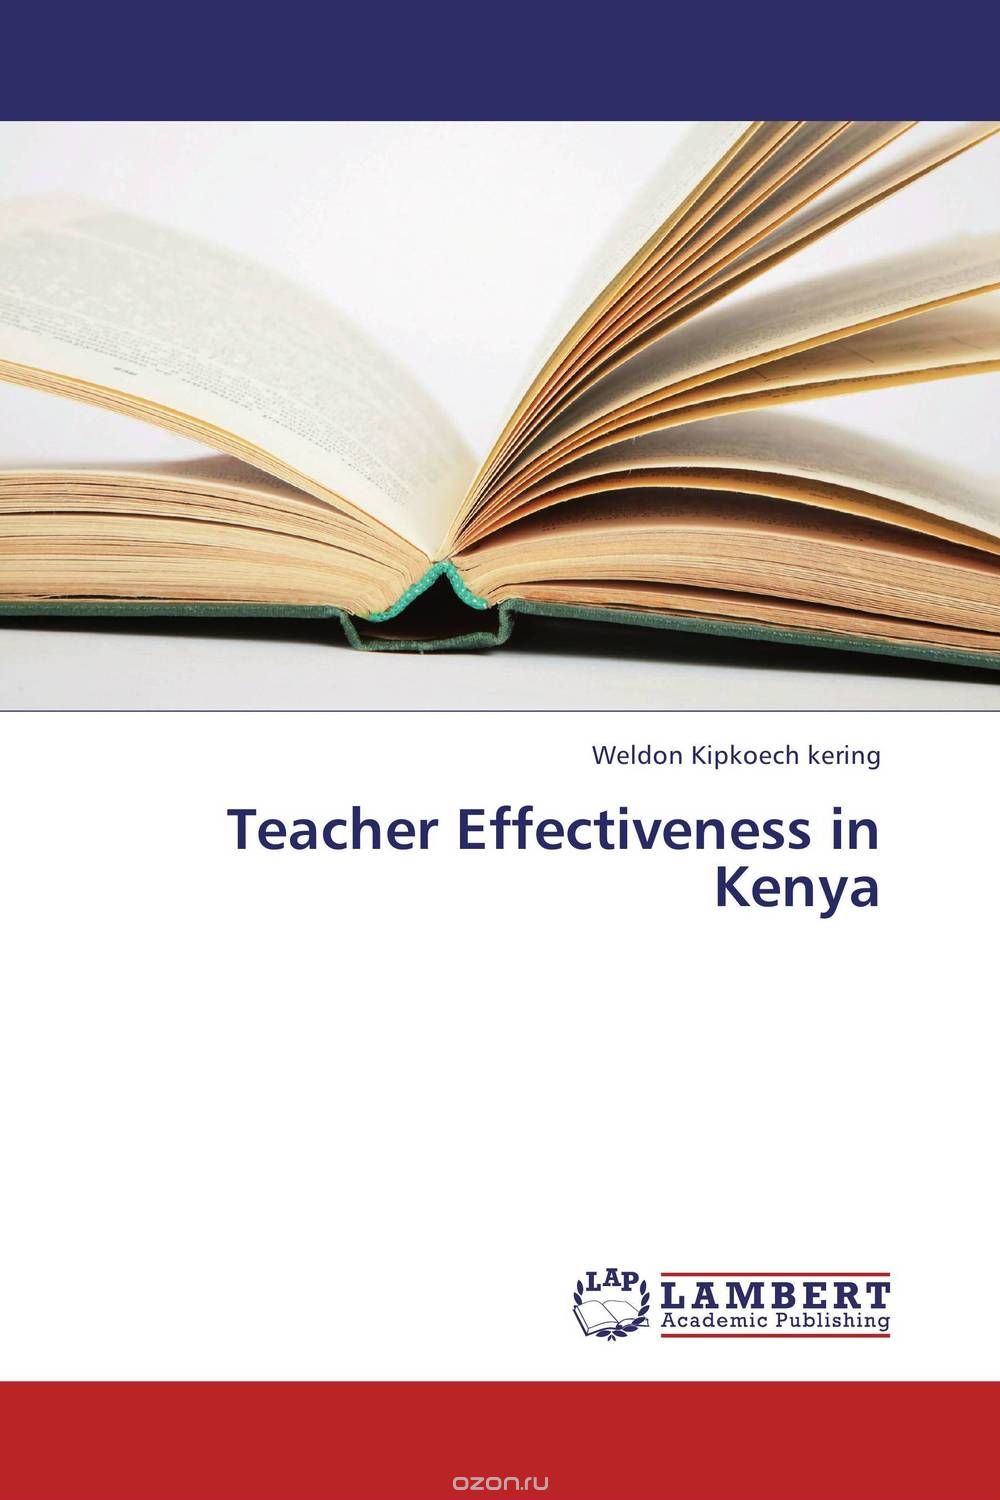 Скачать книгу "Teacher Effectiveness in Kenya"